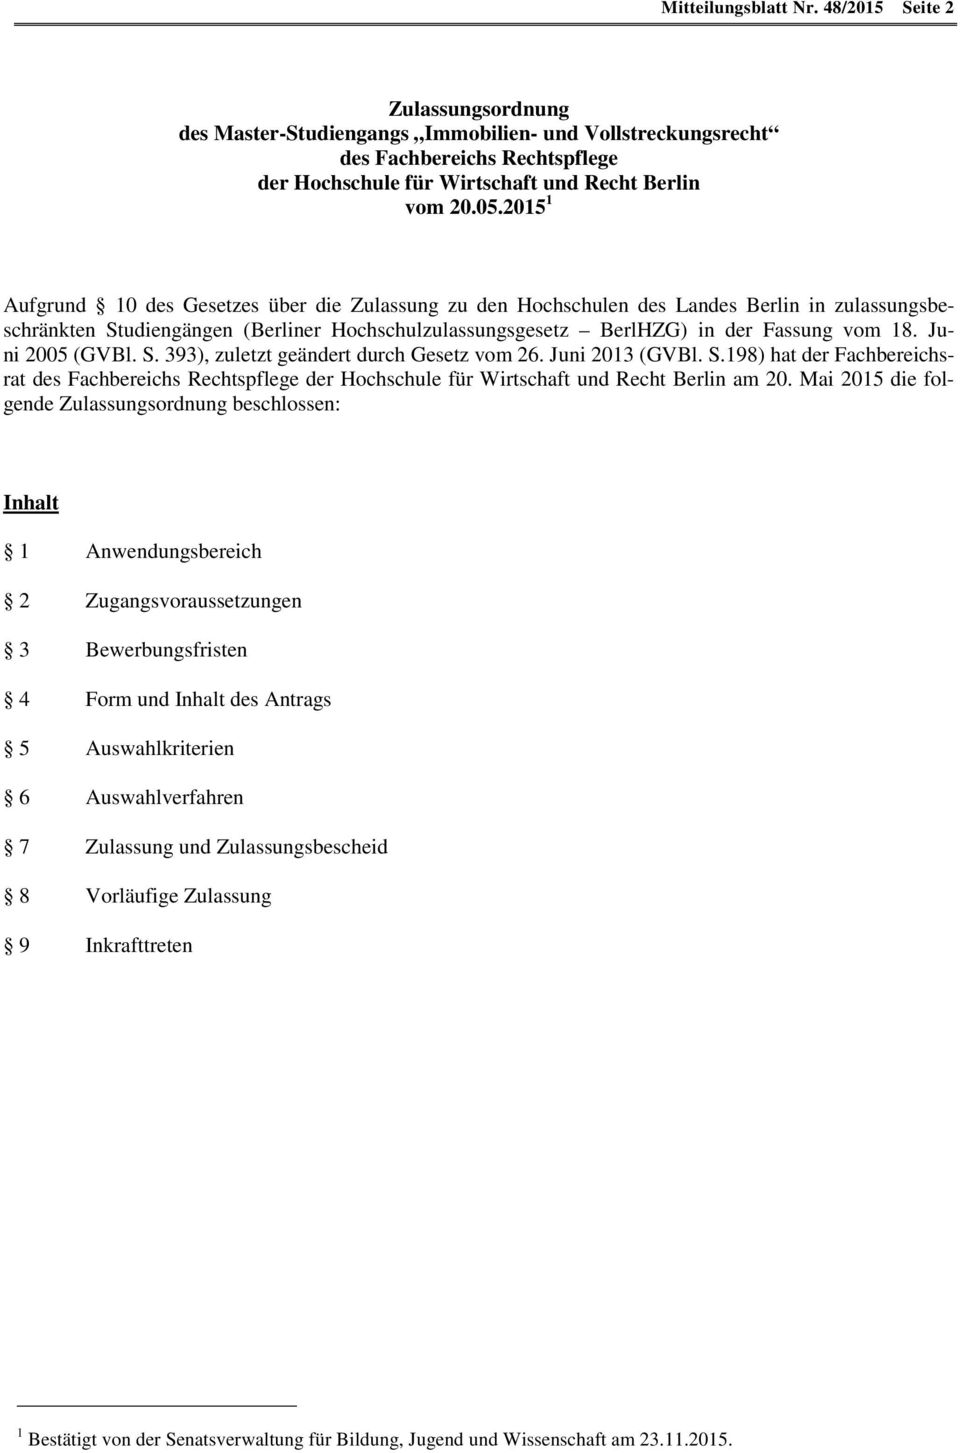 Juni 2005 (GVBl. S. 393), zuletzt geändert durch Gesetz vom 26. Juni 2013 (GVBl. S.198) hat der Fachbereichsrat des Fachbereichs Rechtspflege der Hochschule für Wirtschaft und Recht Berlin am 20.